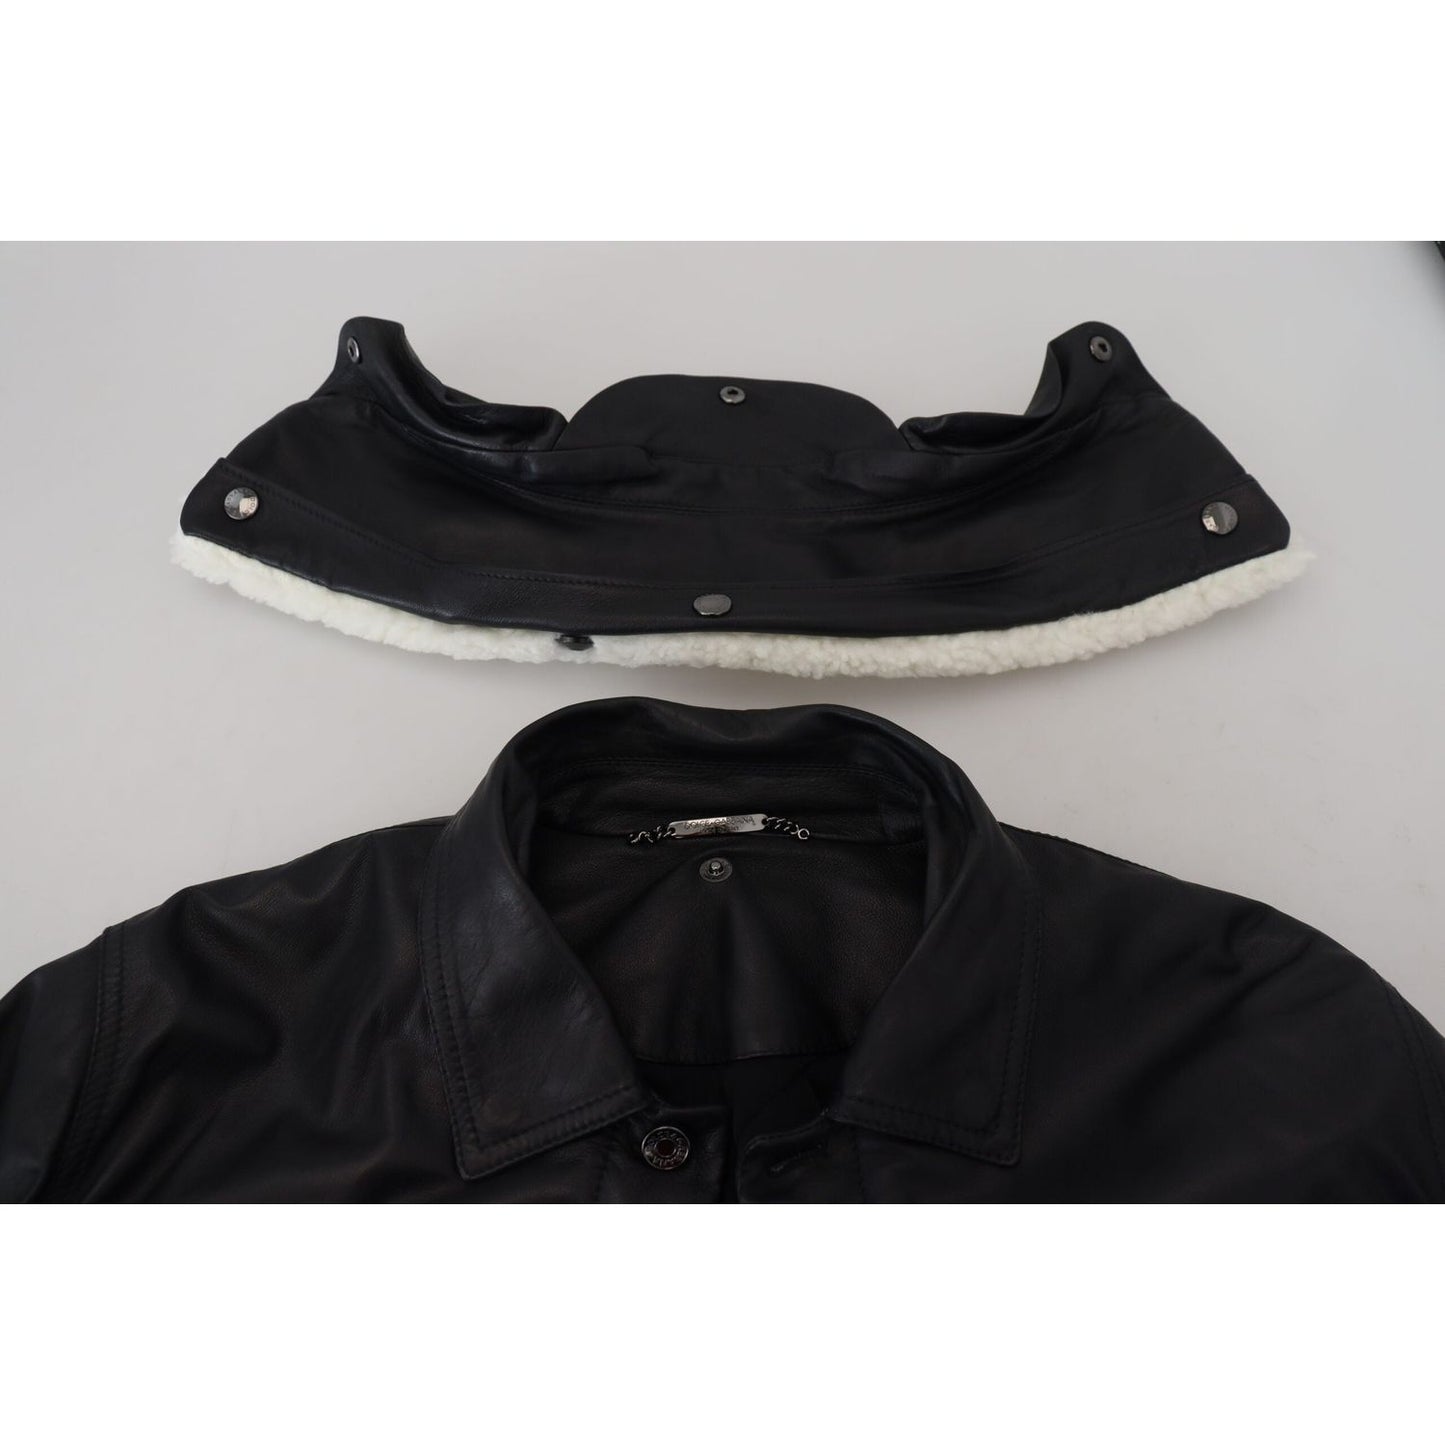 Dolce & Gabbana Elegant Black Leather Bomber Jacket black-lamb-leather-collared-men-coat-jacket-1